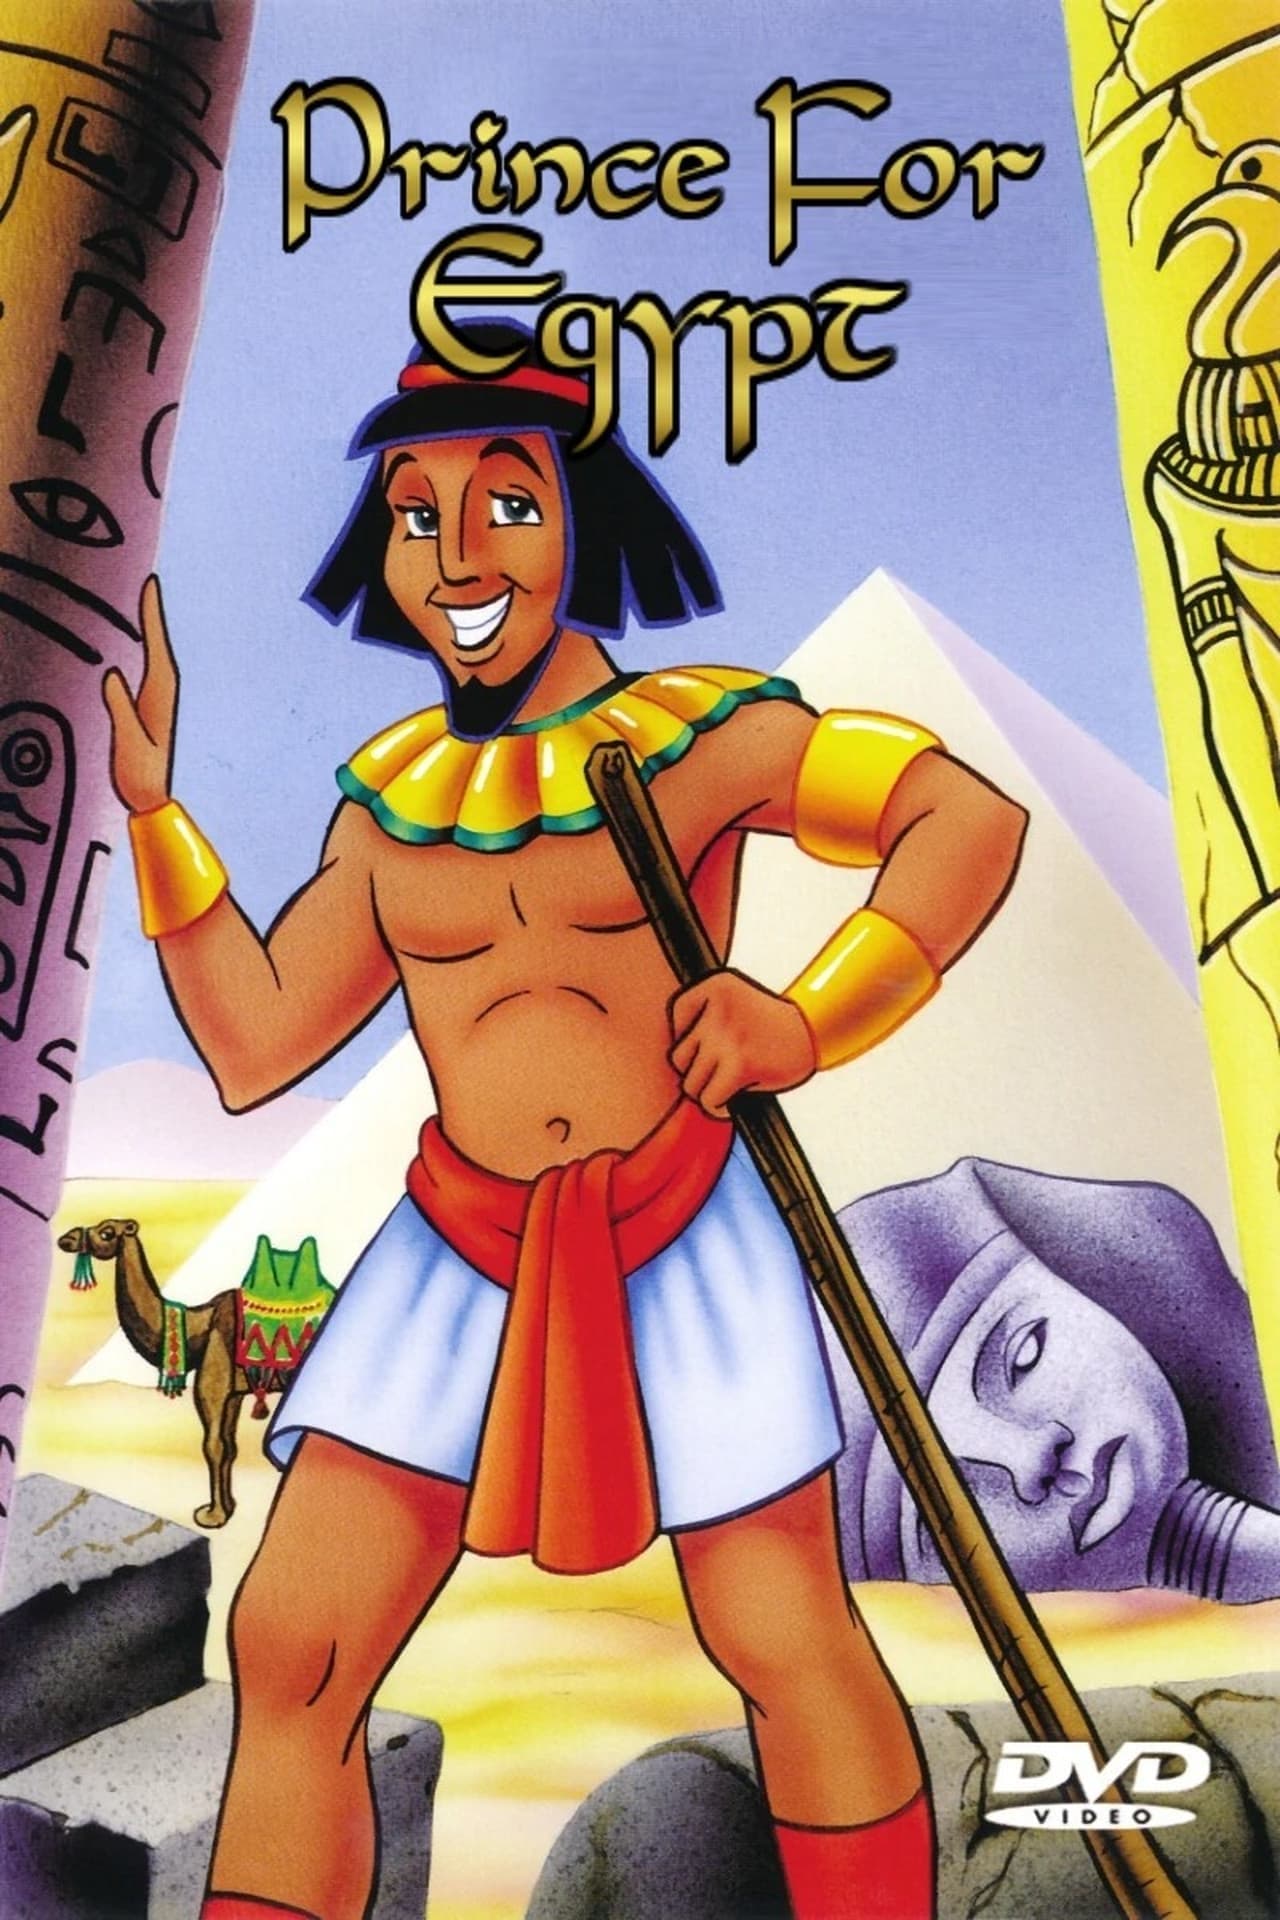 Prince for Egypt